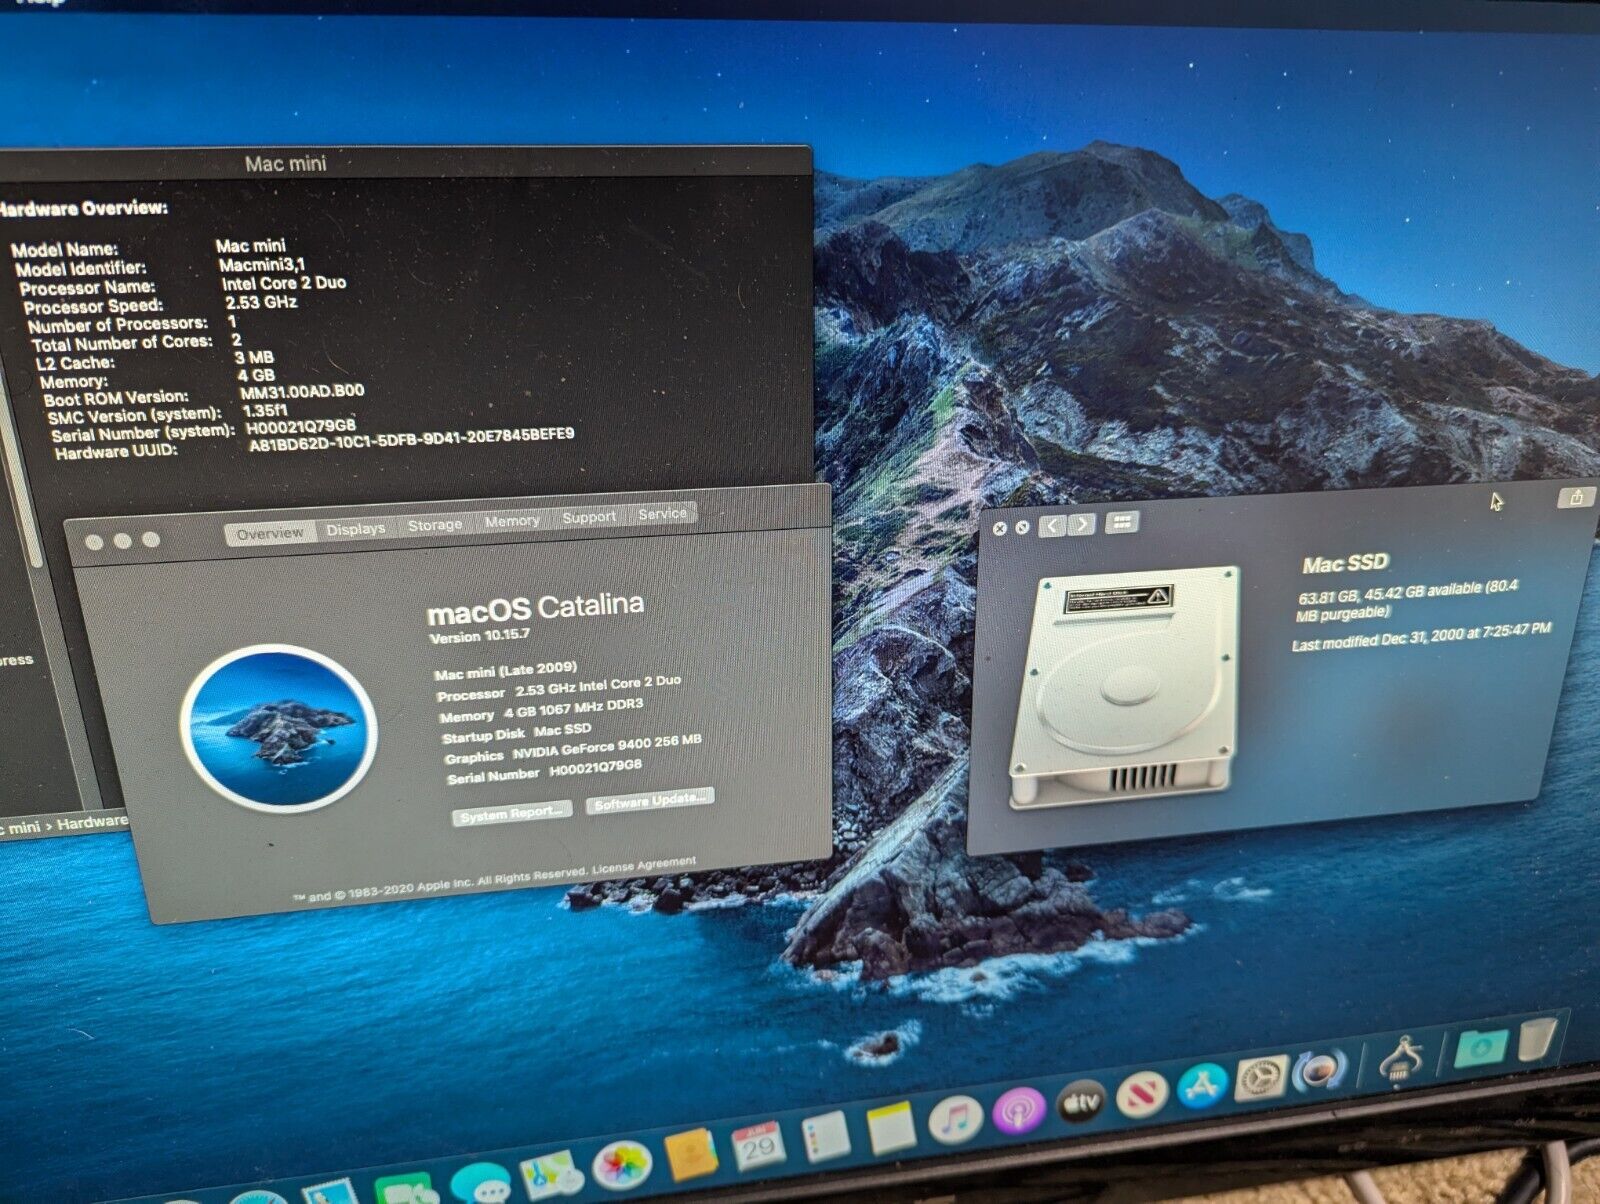 Mac Mini 3,1 · Dual Drive 64GB SSD + 500GB HDD · 4GB RAM · Catalina Bundle